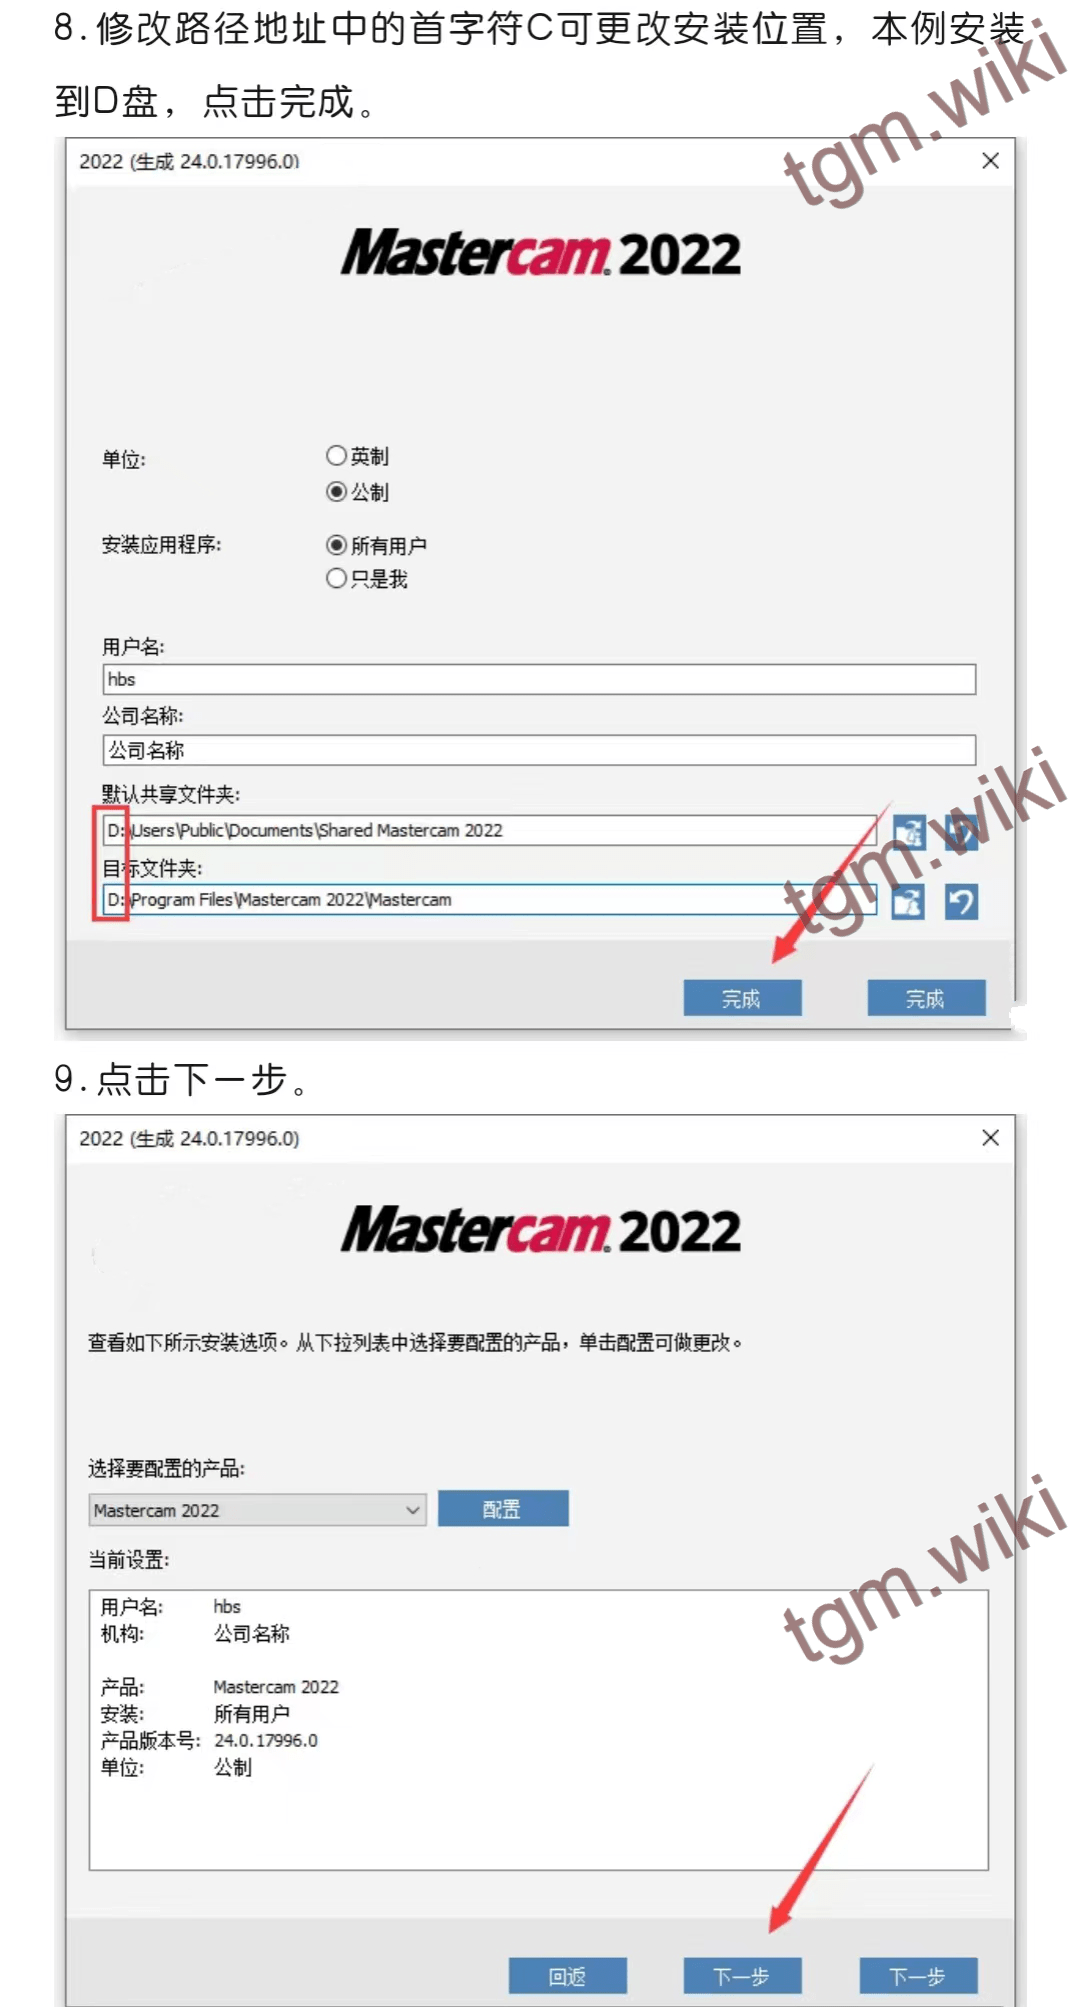 【适用型CAD/CAM设想辅助软件】Mastercam 2022最新详细安拆步调